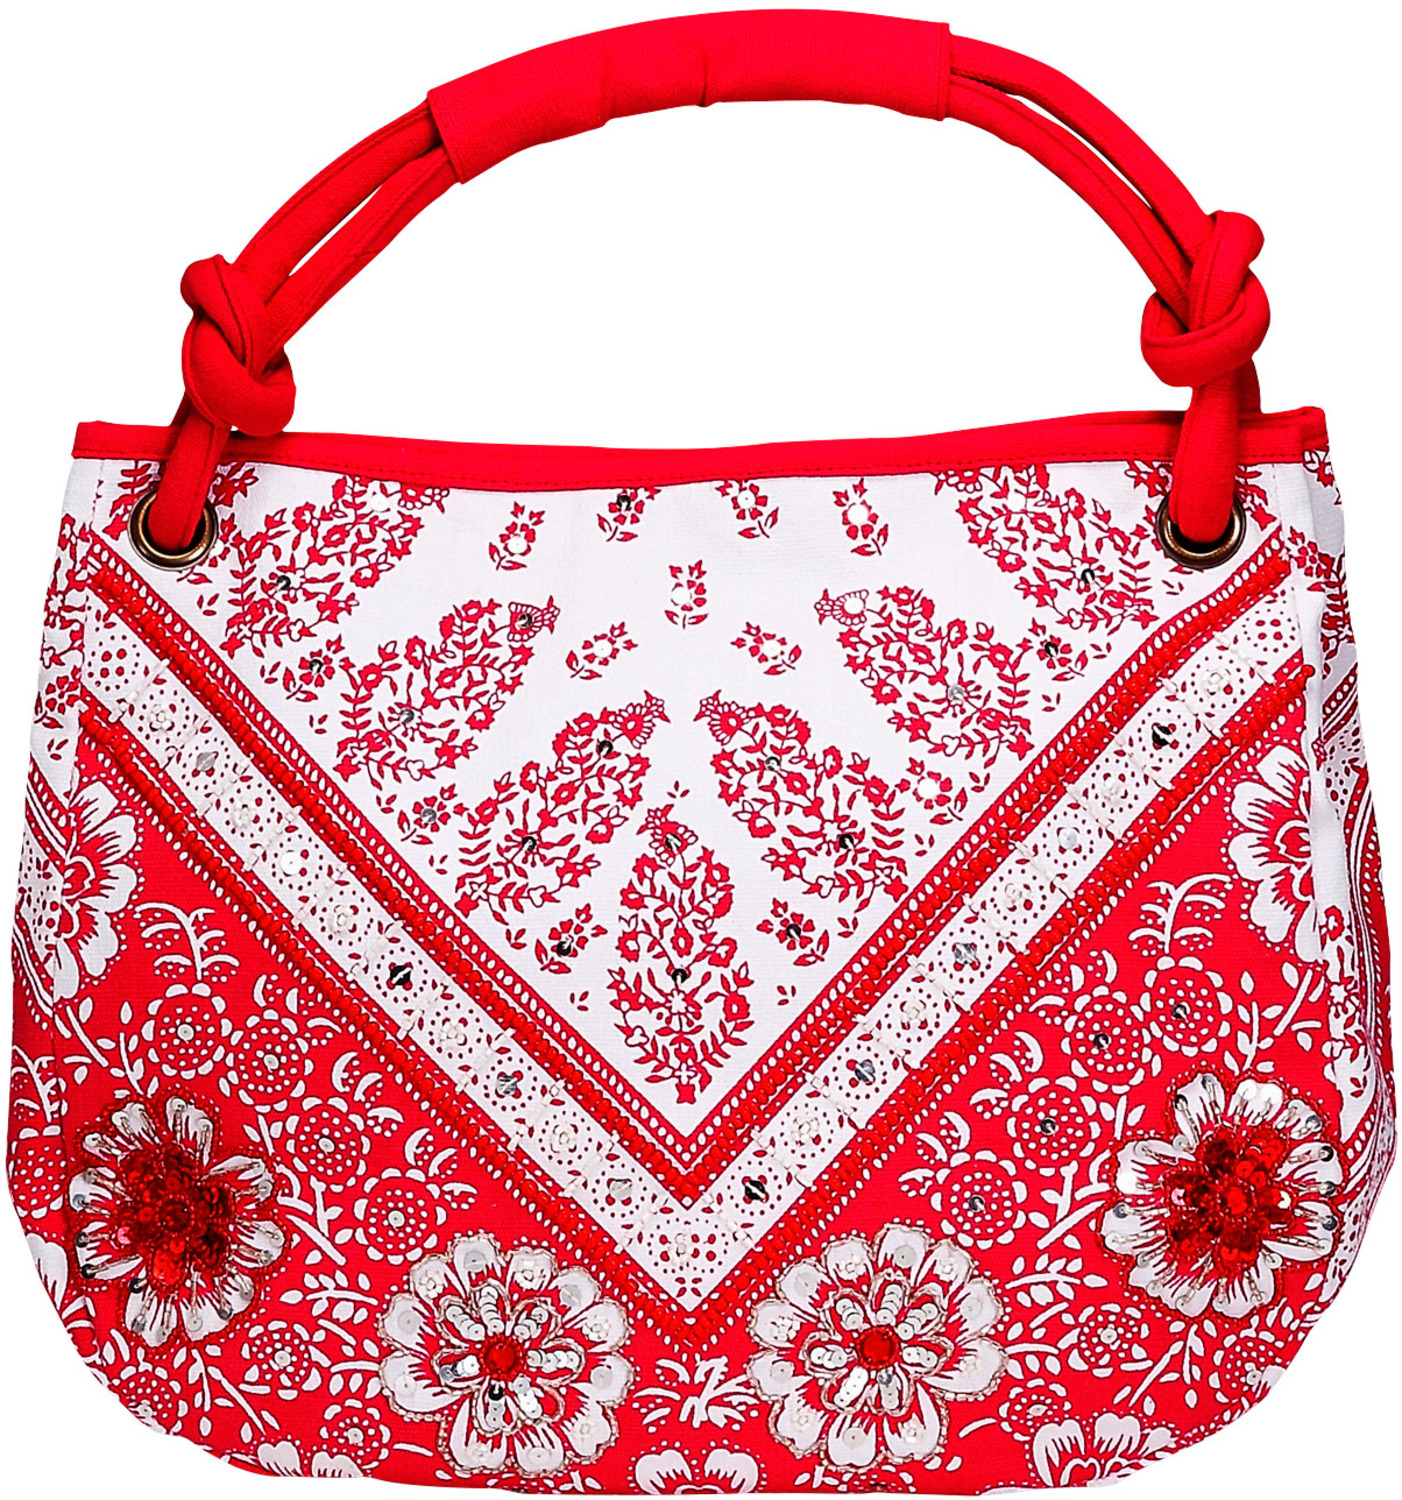 Vanessa Floral Cotton Bag by H2Z - Destination Bags and Scarves - Vanessa Floral Cotton Bag - 13.25" x 15" Fuchsia Purse/Bag